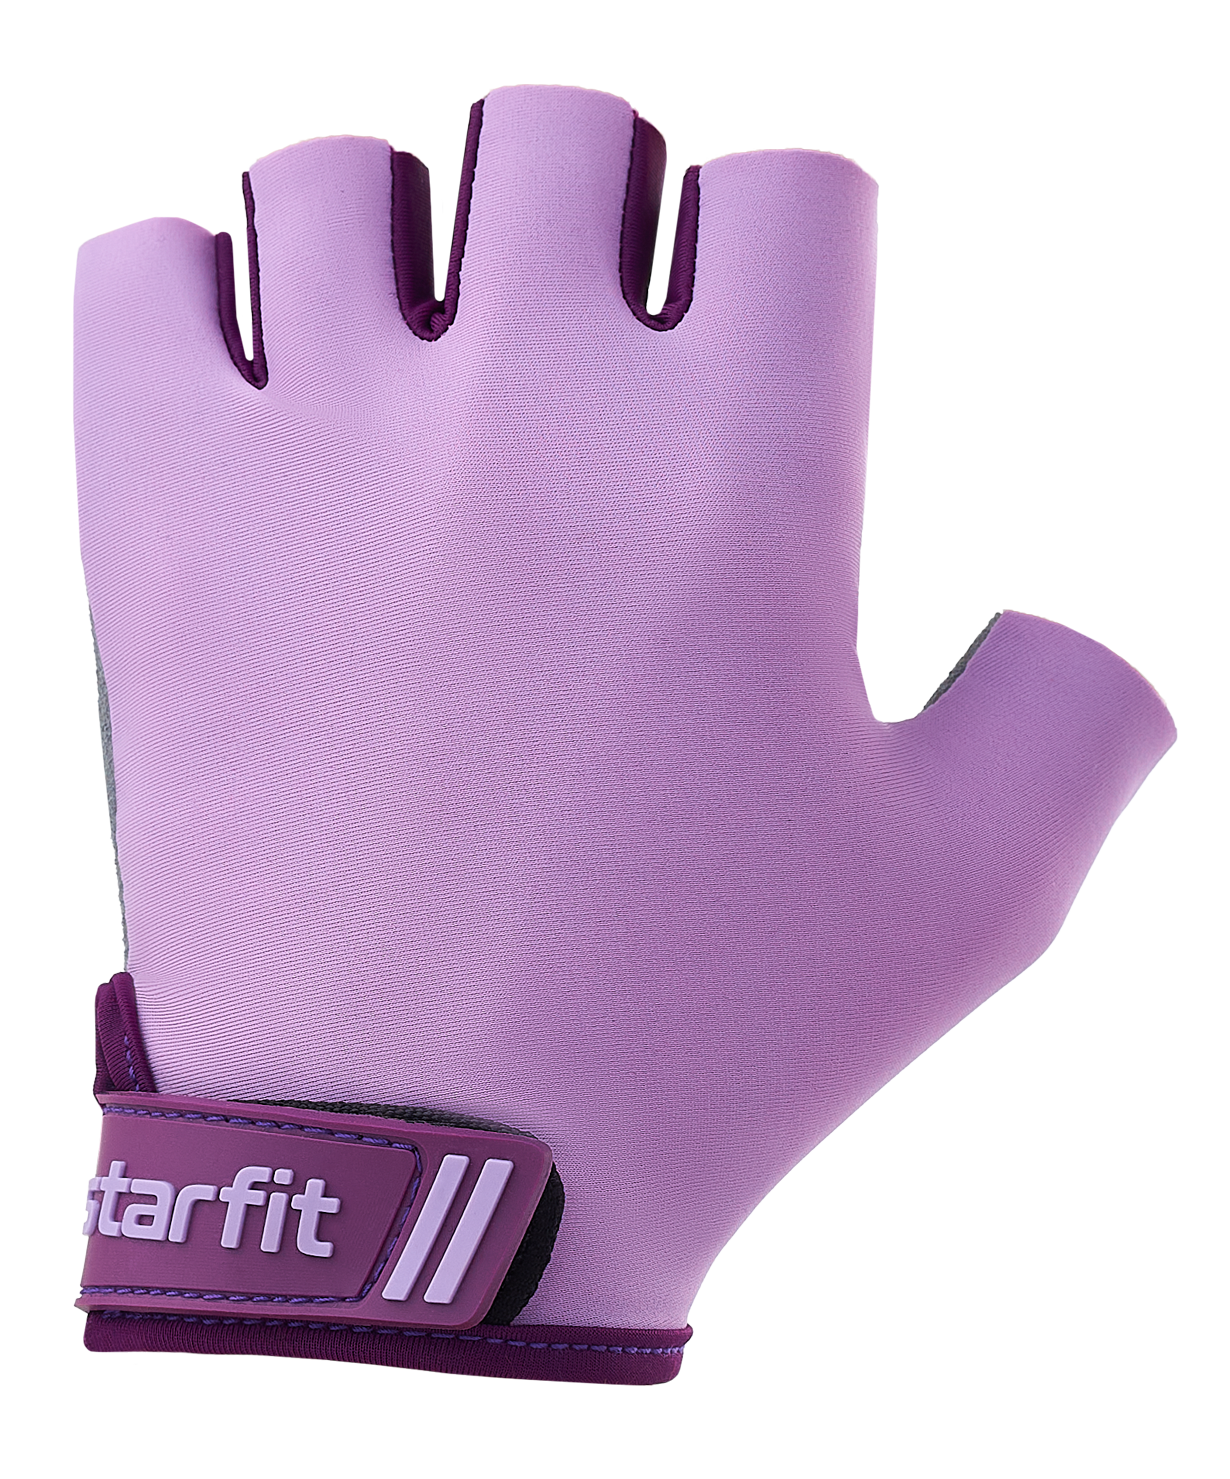 Перчатки для фитнеса Starfit WG-101, фиолетовый